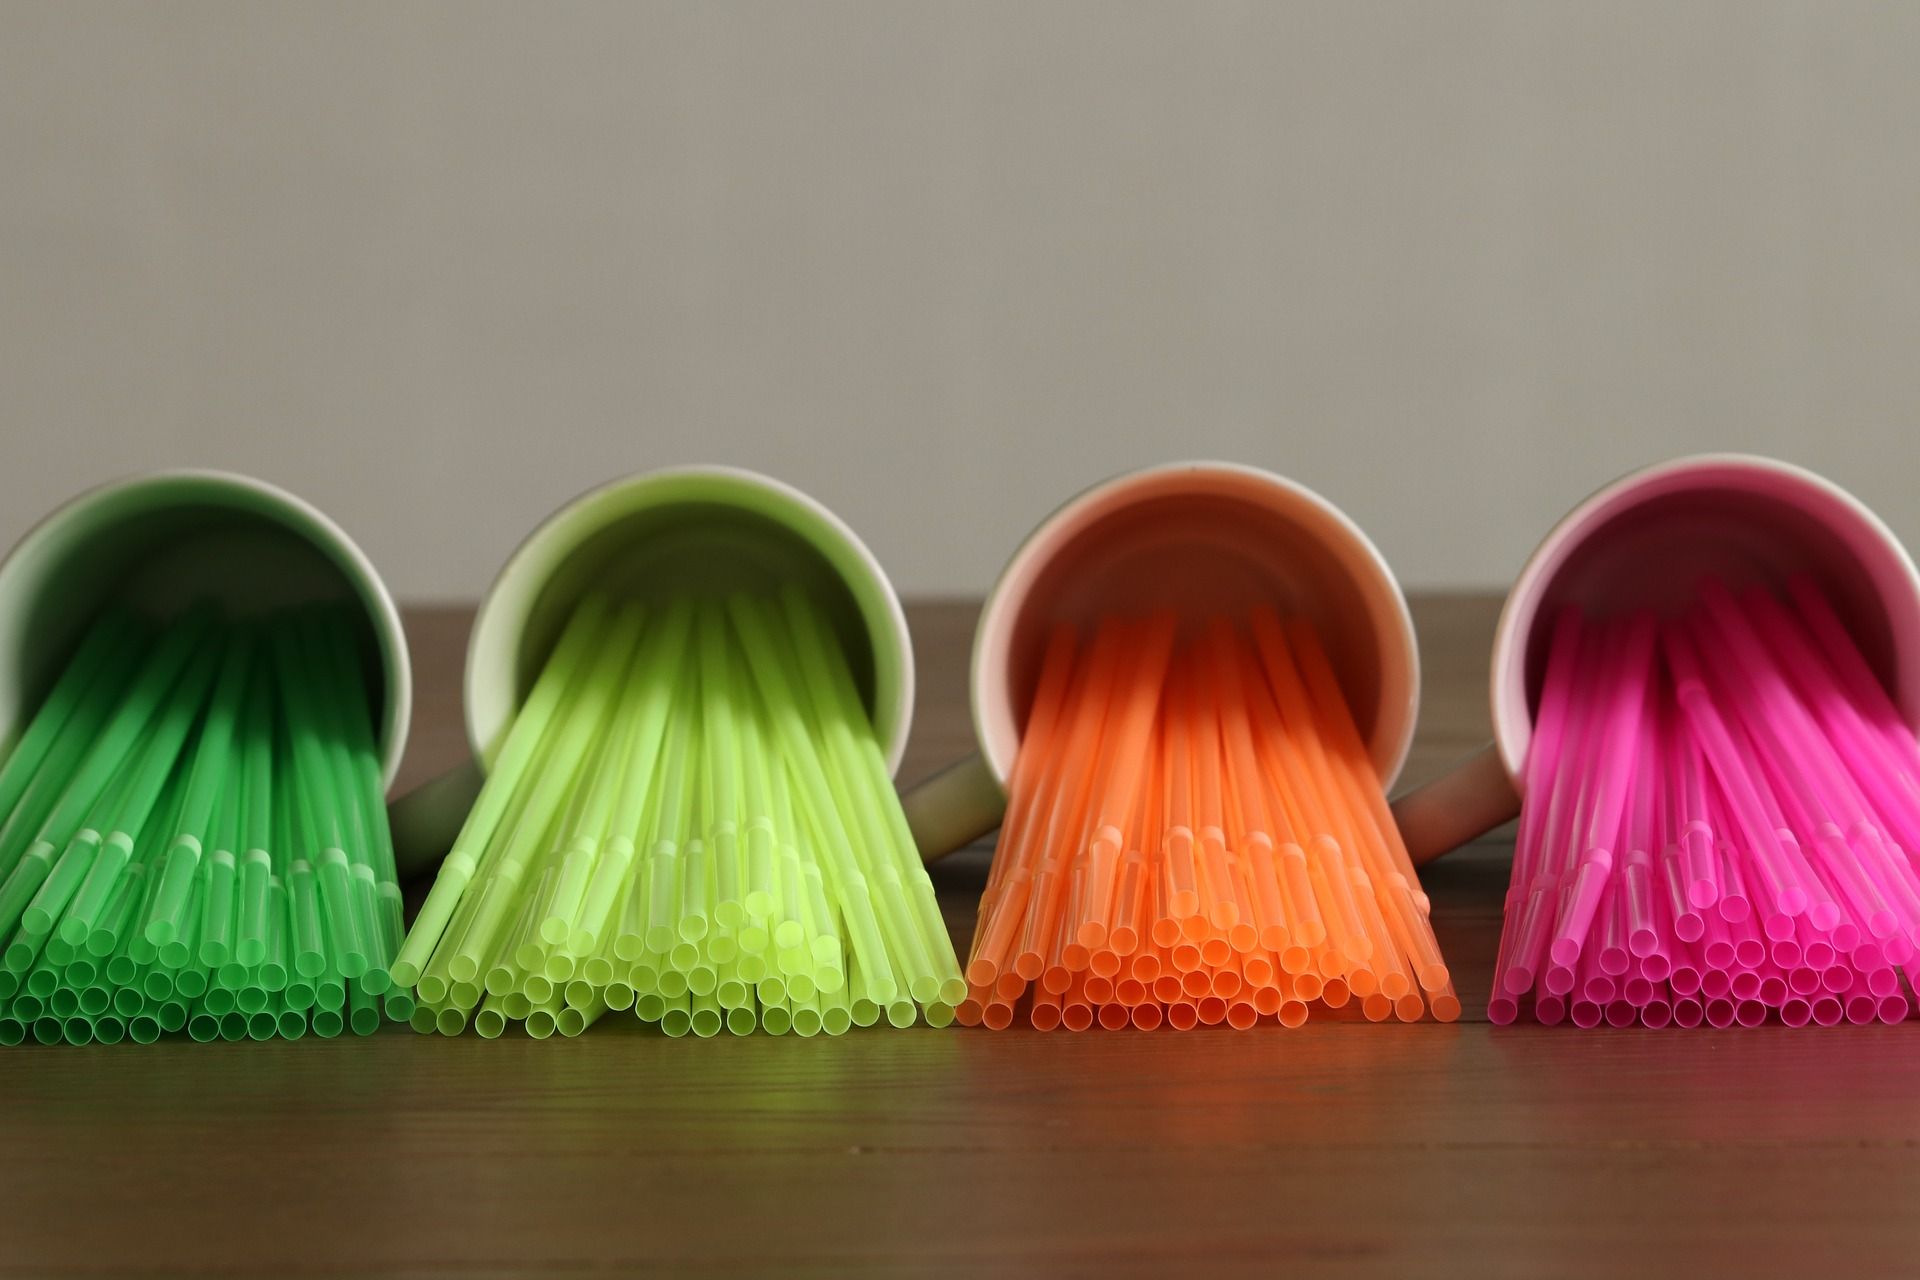 Pajitas de plástico, de colores quedarán prohibidas / Foto: Marjon Besteman - Pixabay